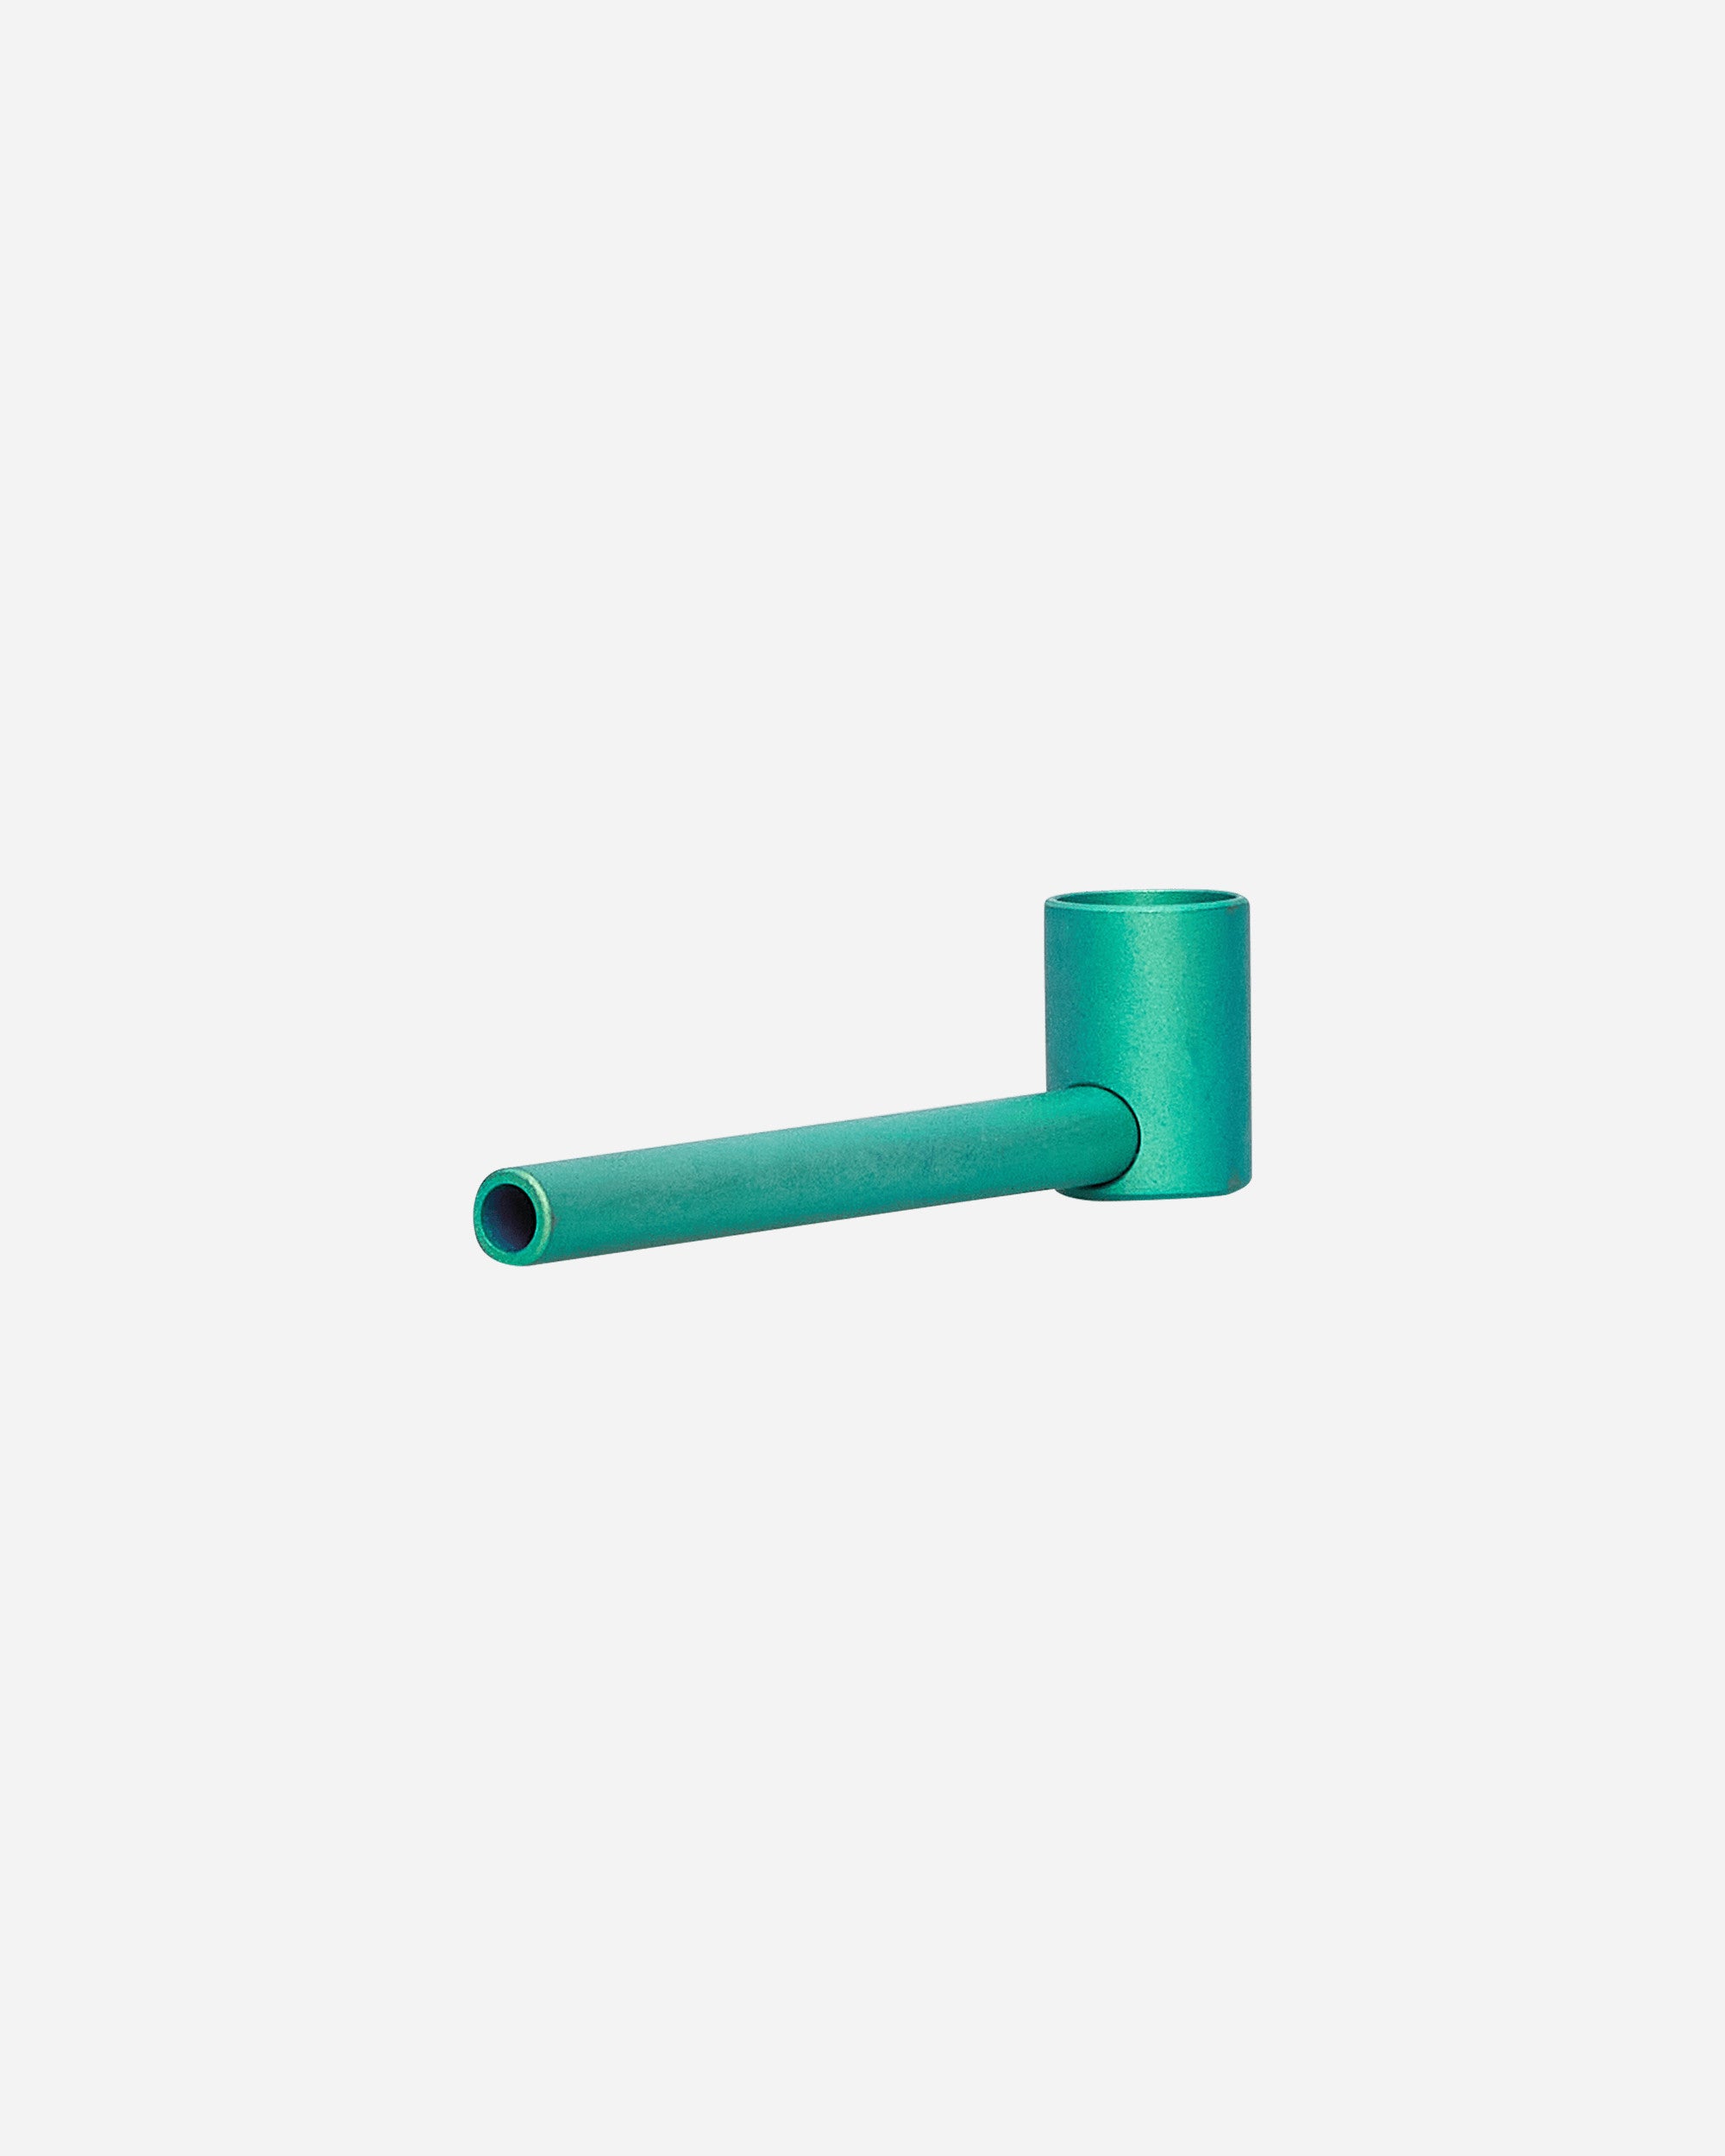 Dangle Supply Ti Cobb Titanium Pipe- Emerald Emerald Homeware Design Items PIPE03 001